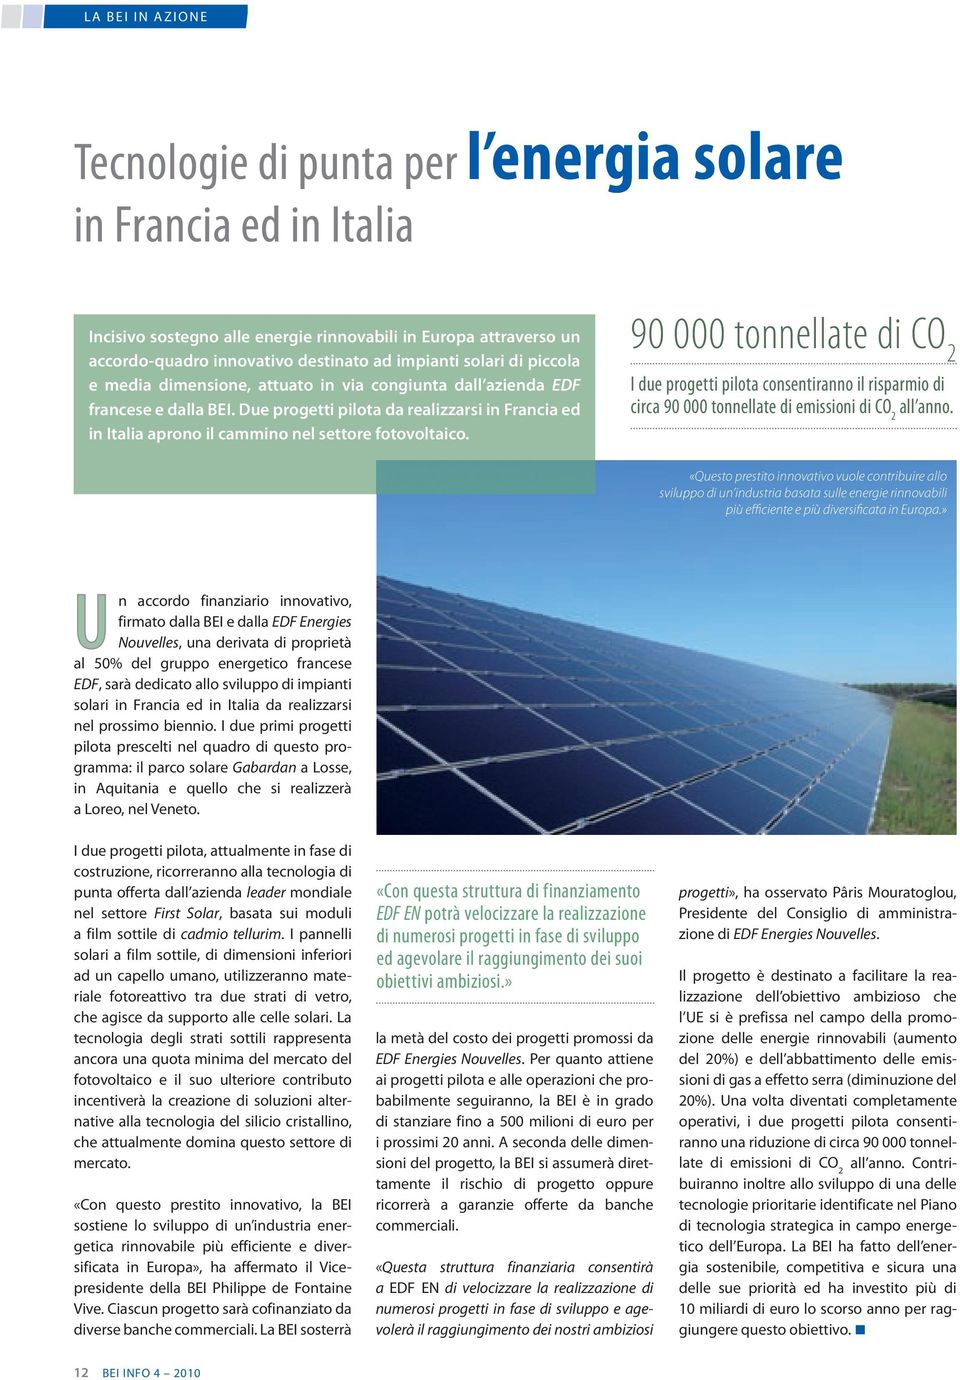 Due progetti pilota da realizzarsi in Francia ed in Italia aprono il cammino nel settore fotovoltaico.